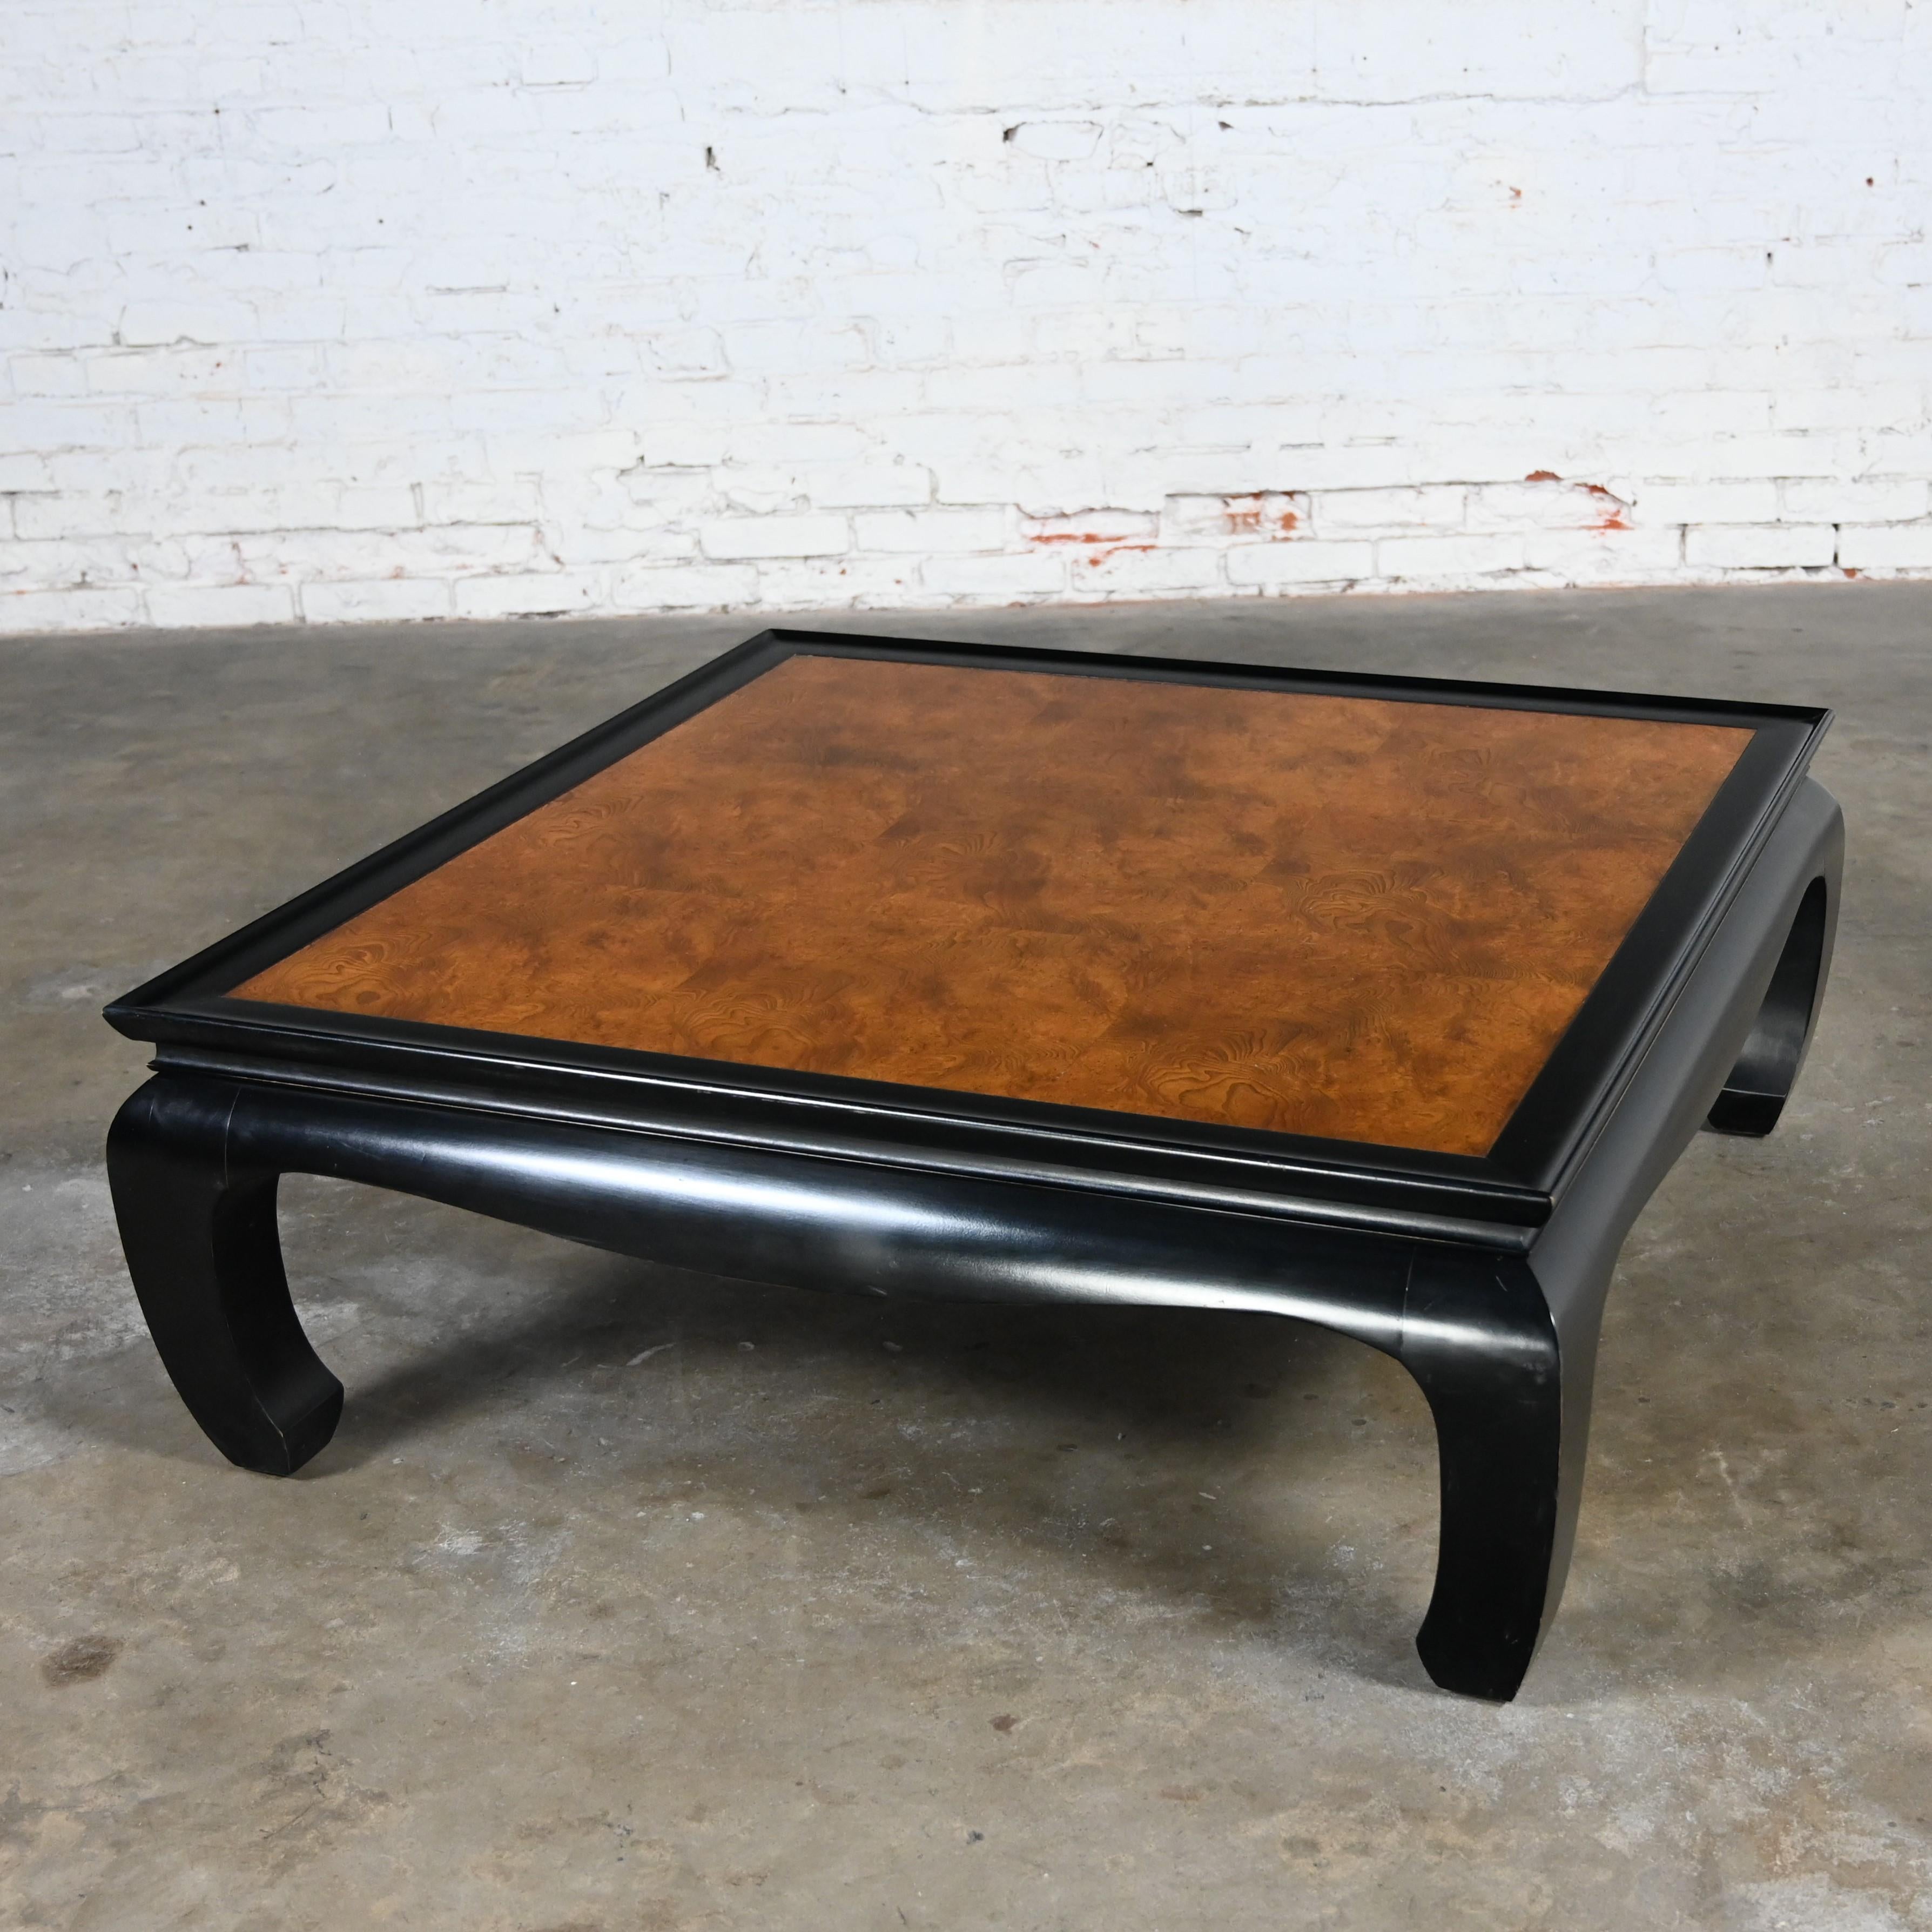 Fabuleuse table basse vintage de style Ming en noir et ronce Attribuée à la Collectional de Chin Hua par Raymond K.K. Sabota pour Century Furniture. Cette pièce a été attribuée sur la base de recherches archivées, y compris des sources en ligne, de